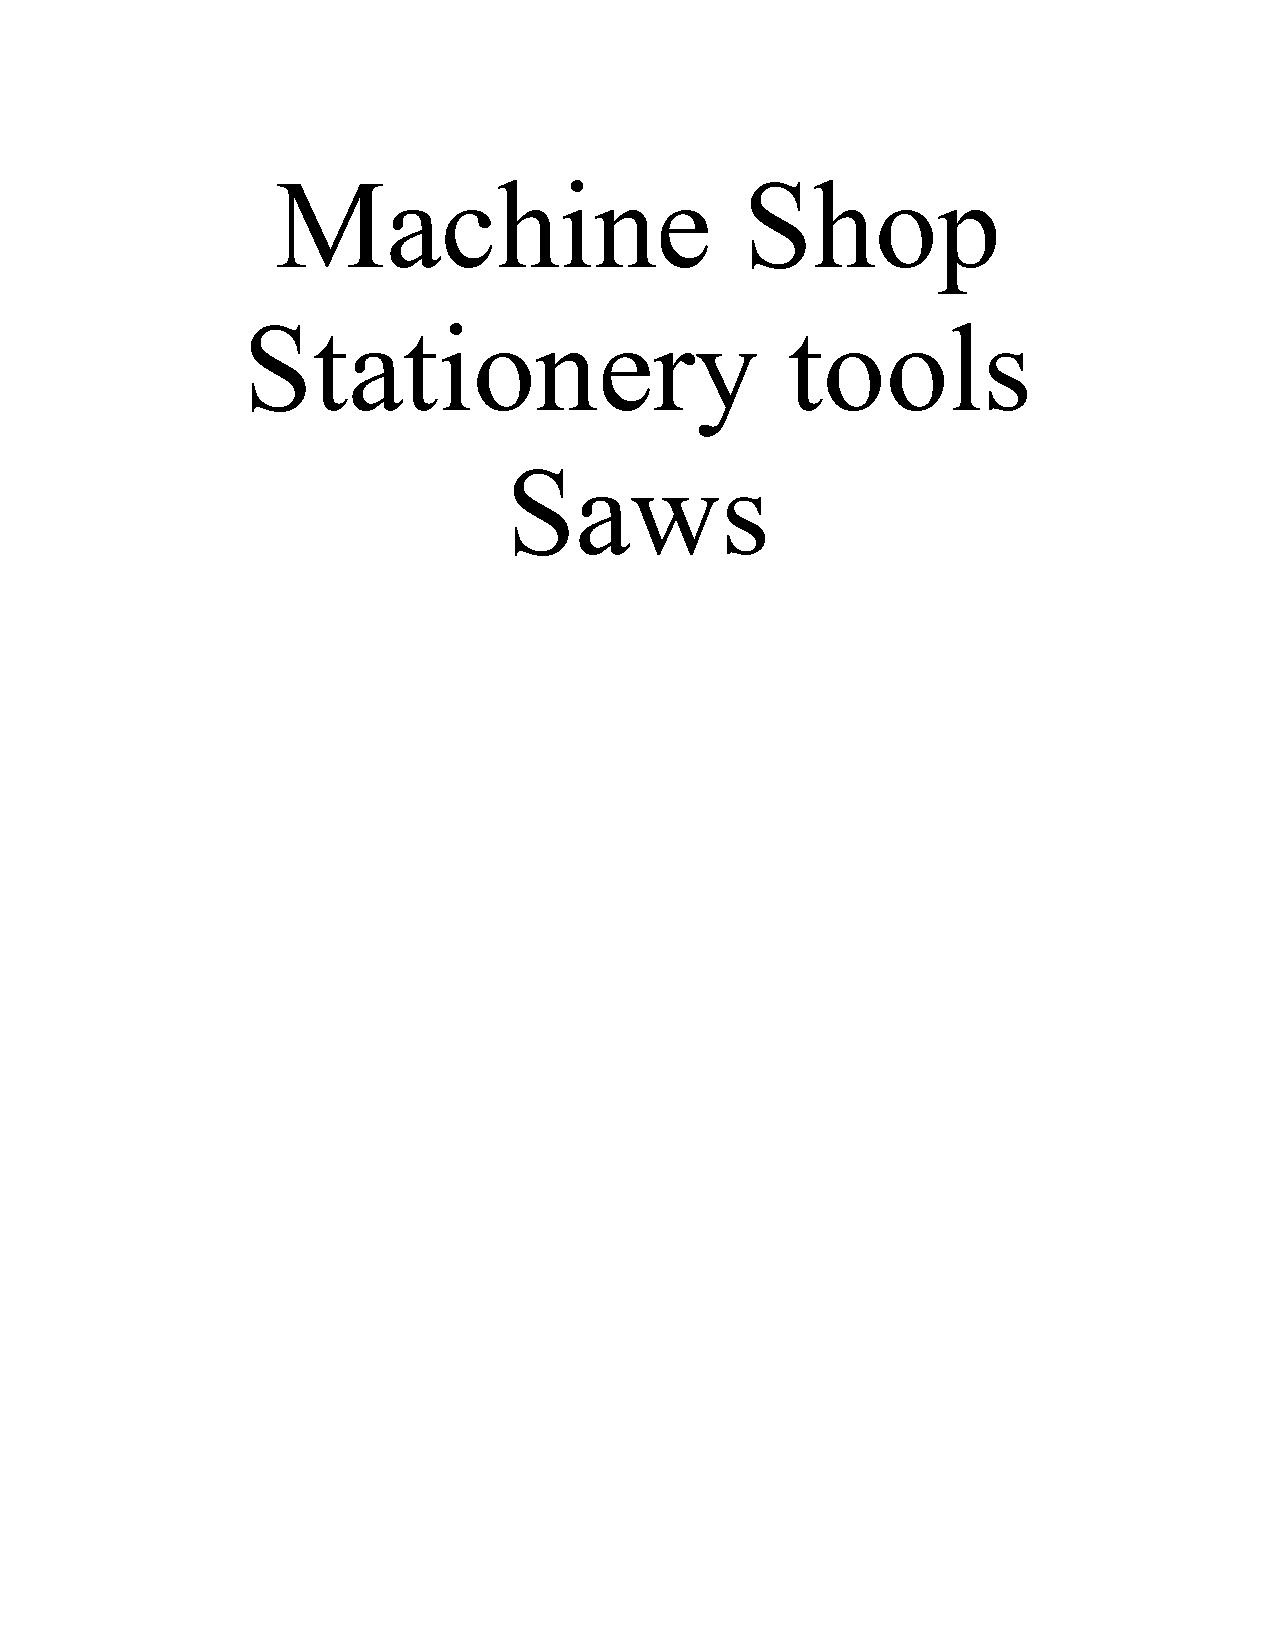 Stationery Saws.pdf